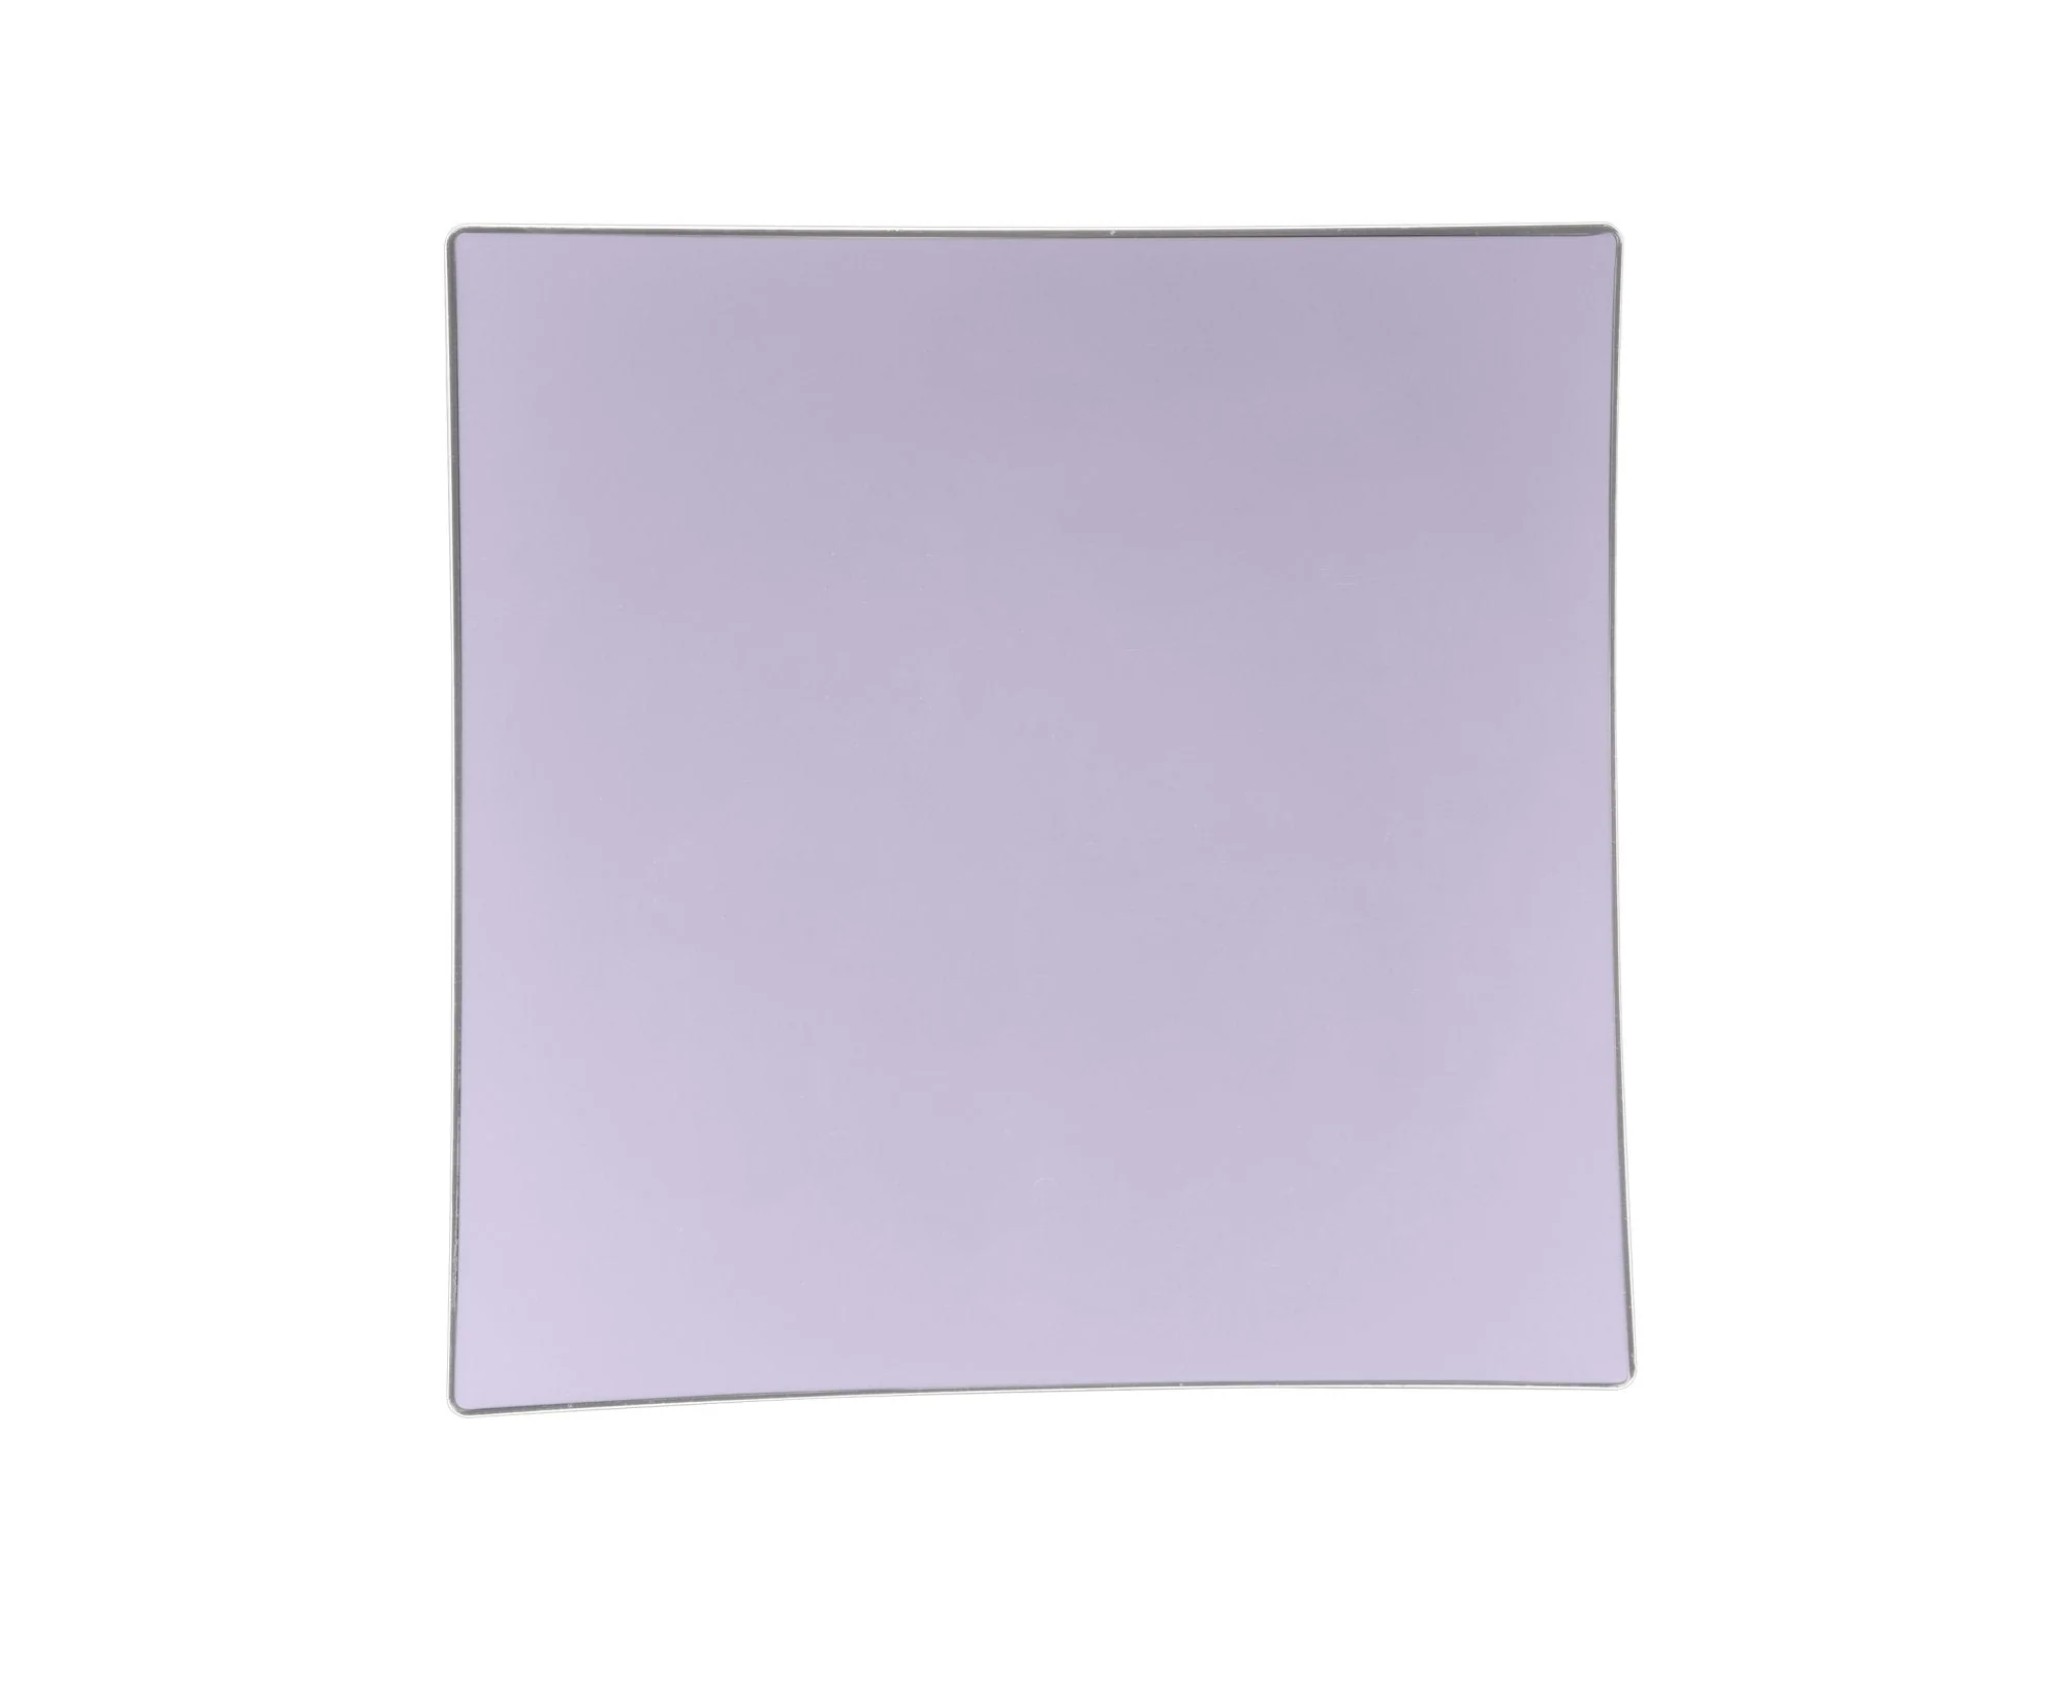 Luxe Party Square Lavender Silver Rim Appetizer Plates 8" - 10 pcs